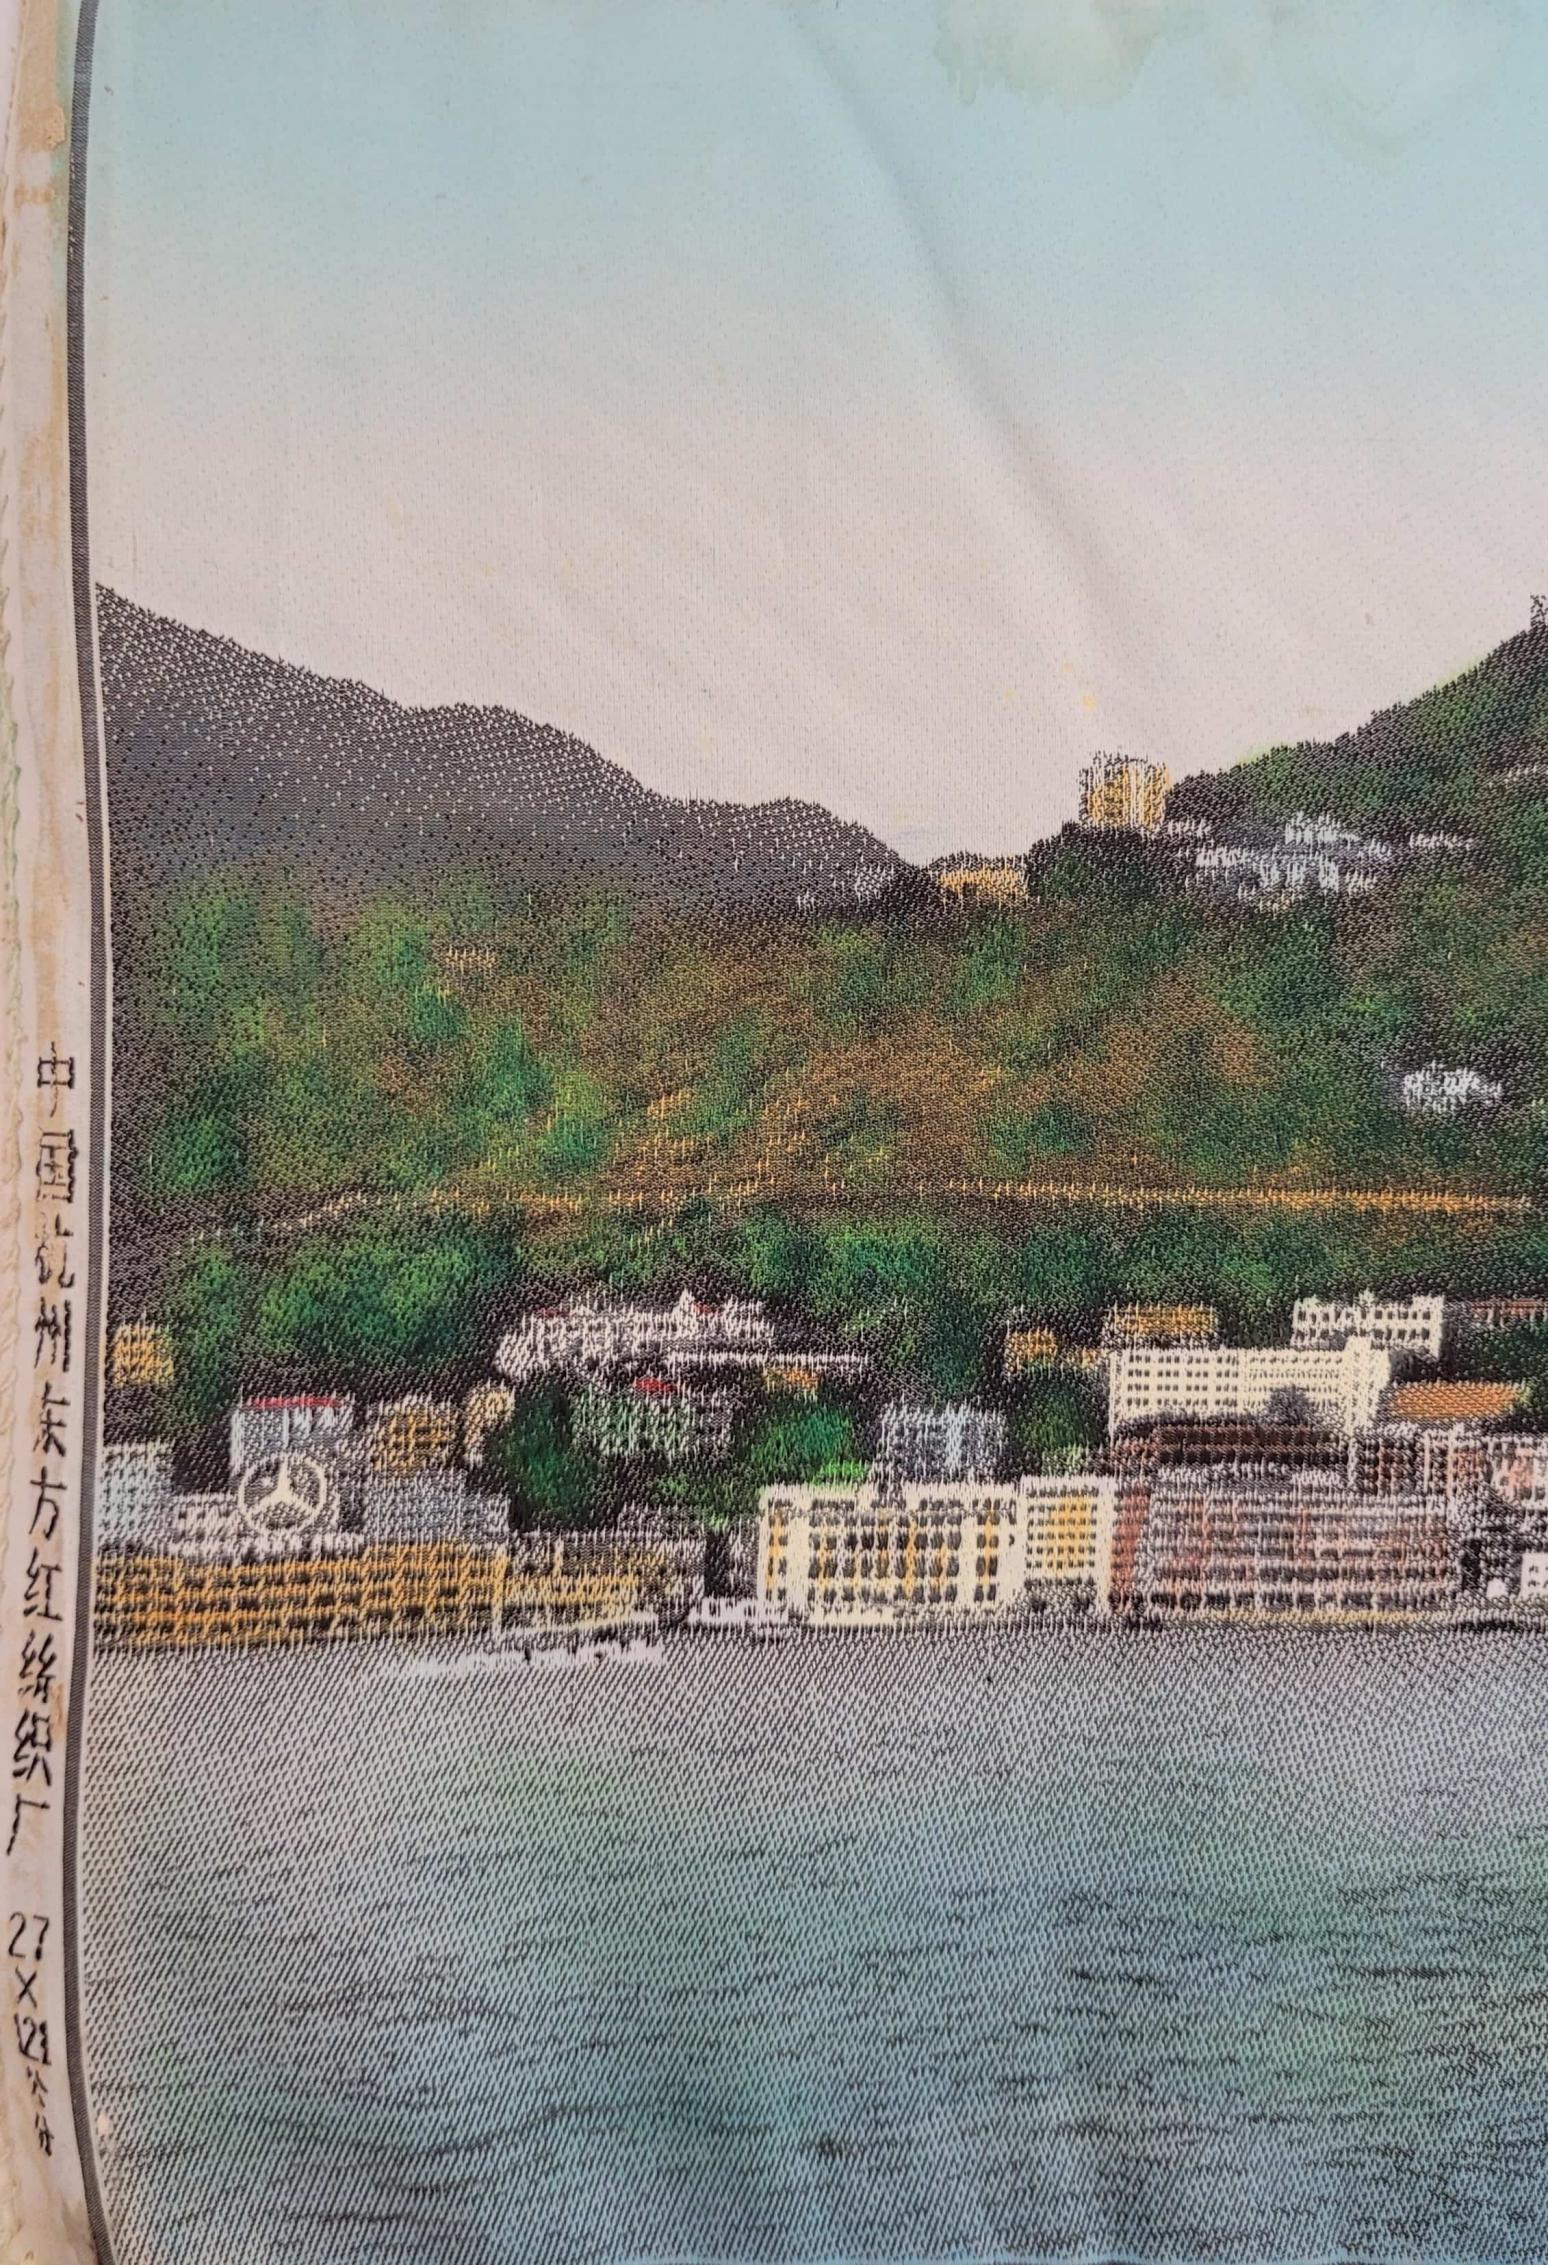 香港全景圖上最左方有「中國杭州東方紅絲織廠」的字樣，背景是灣仔海旁，山腰的寶雲道清晰可見。